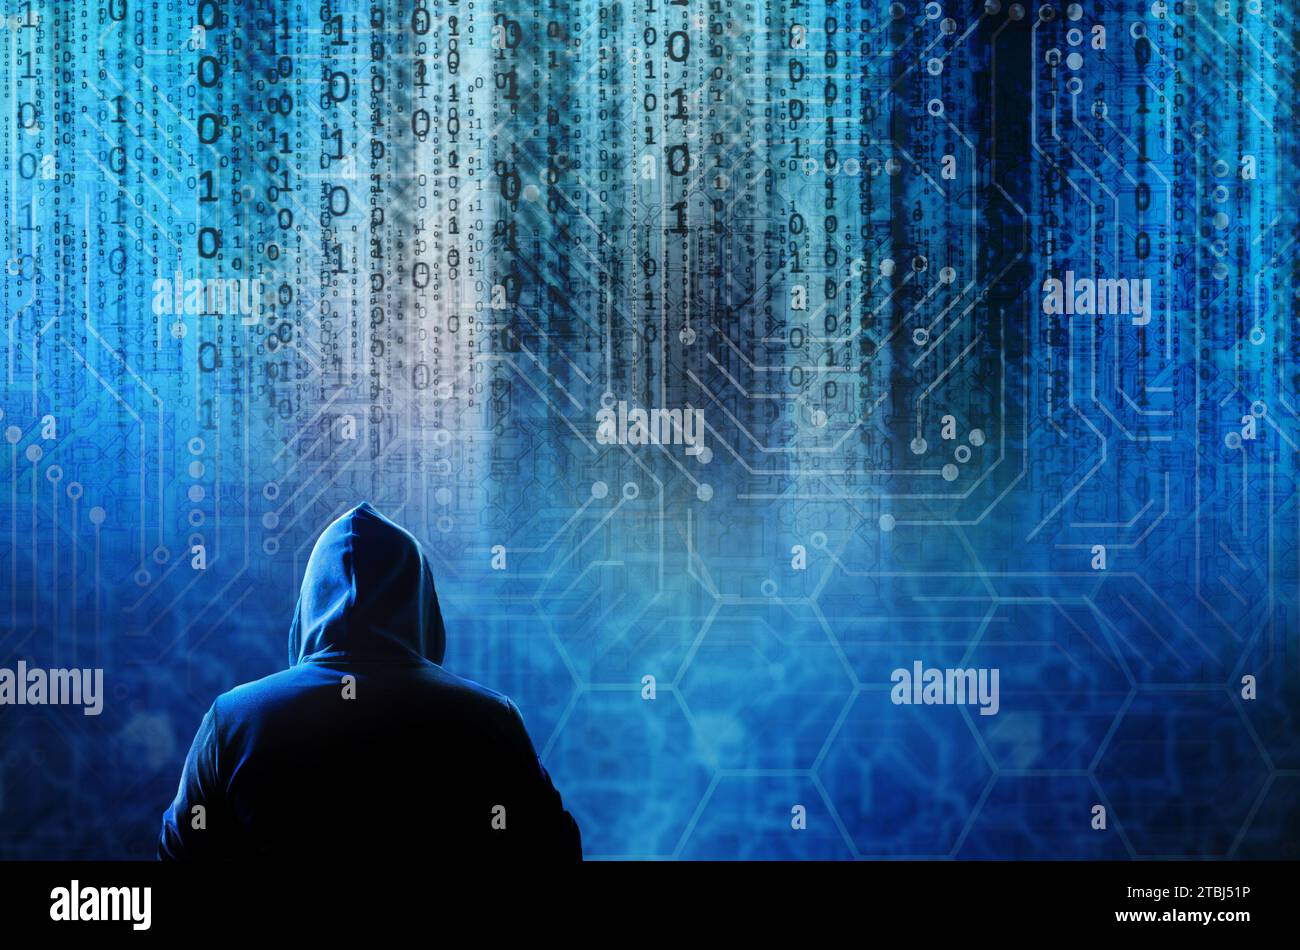 pirate dans le capot et les données binaires pleuvent, cybercriminalité, ransomware, violation de données et concept de phishing Banque D'Images